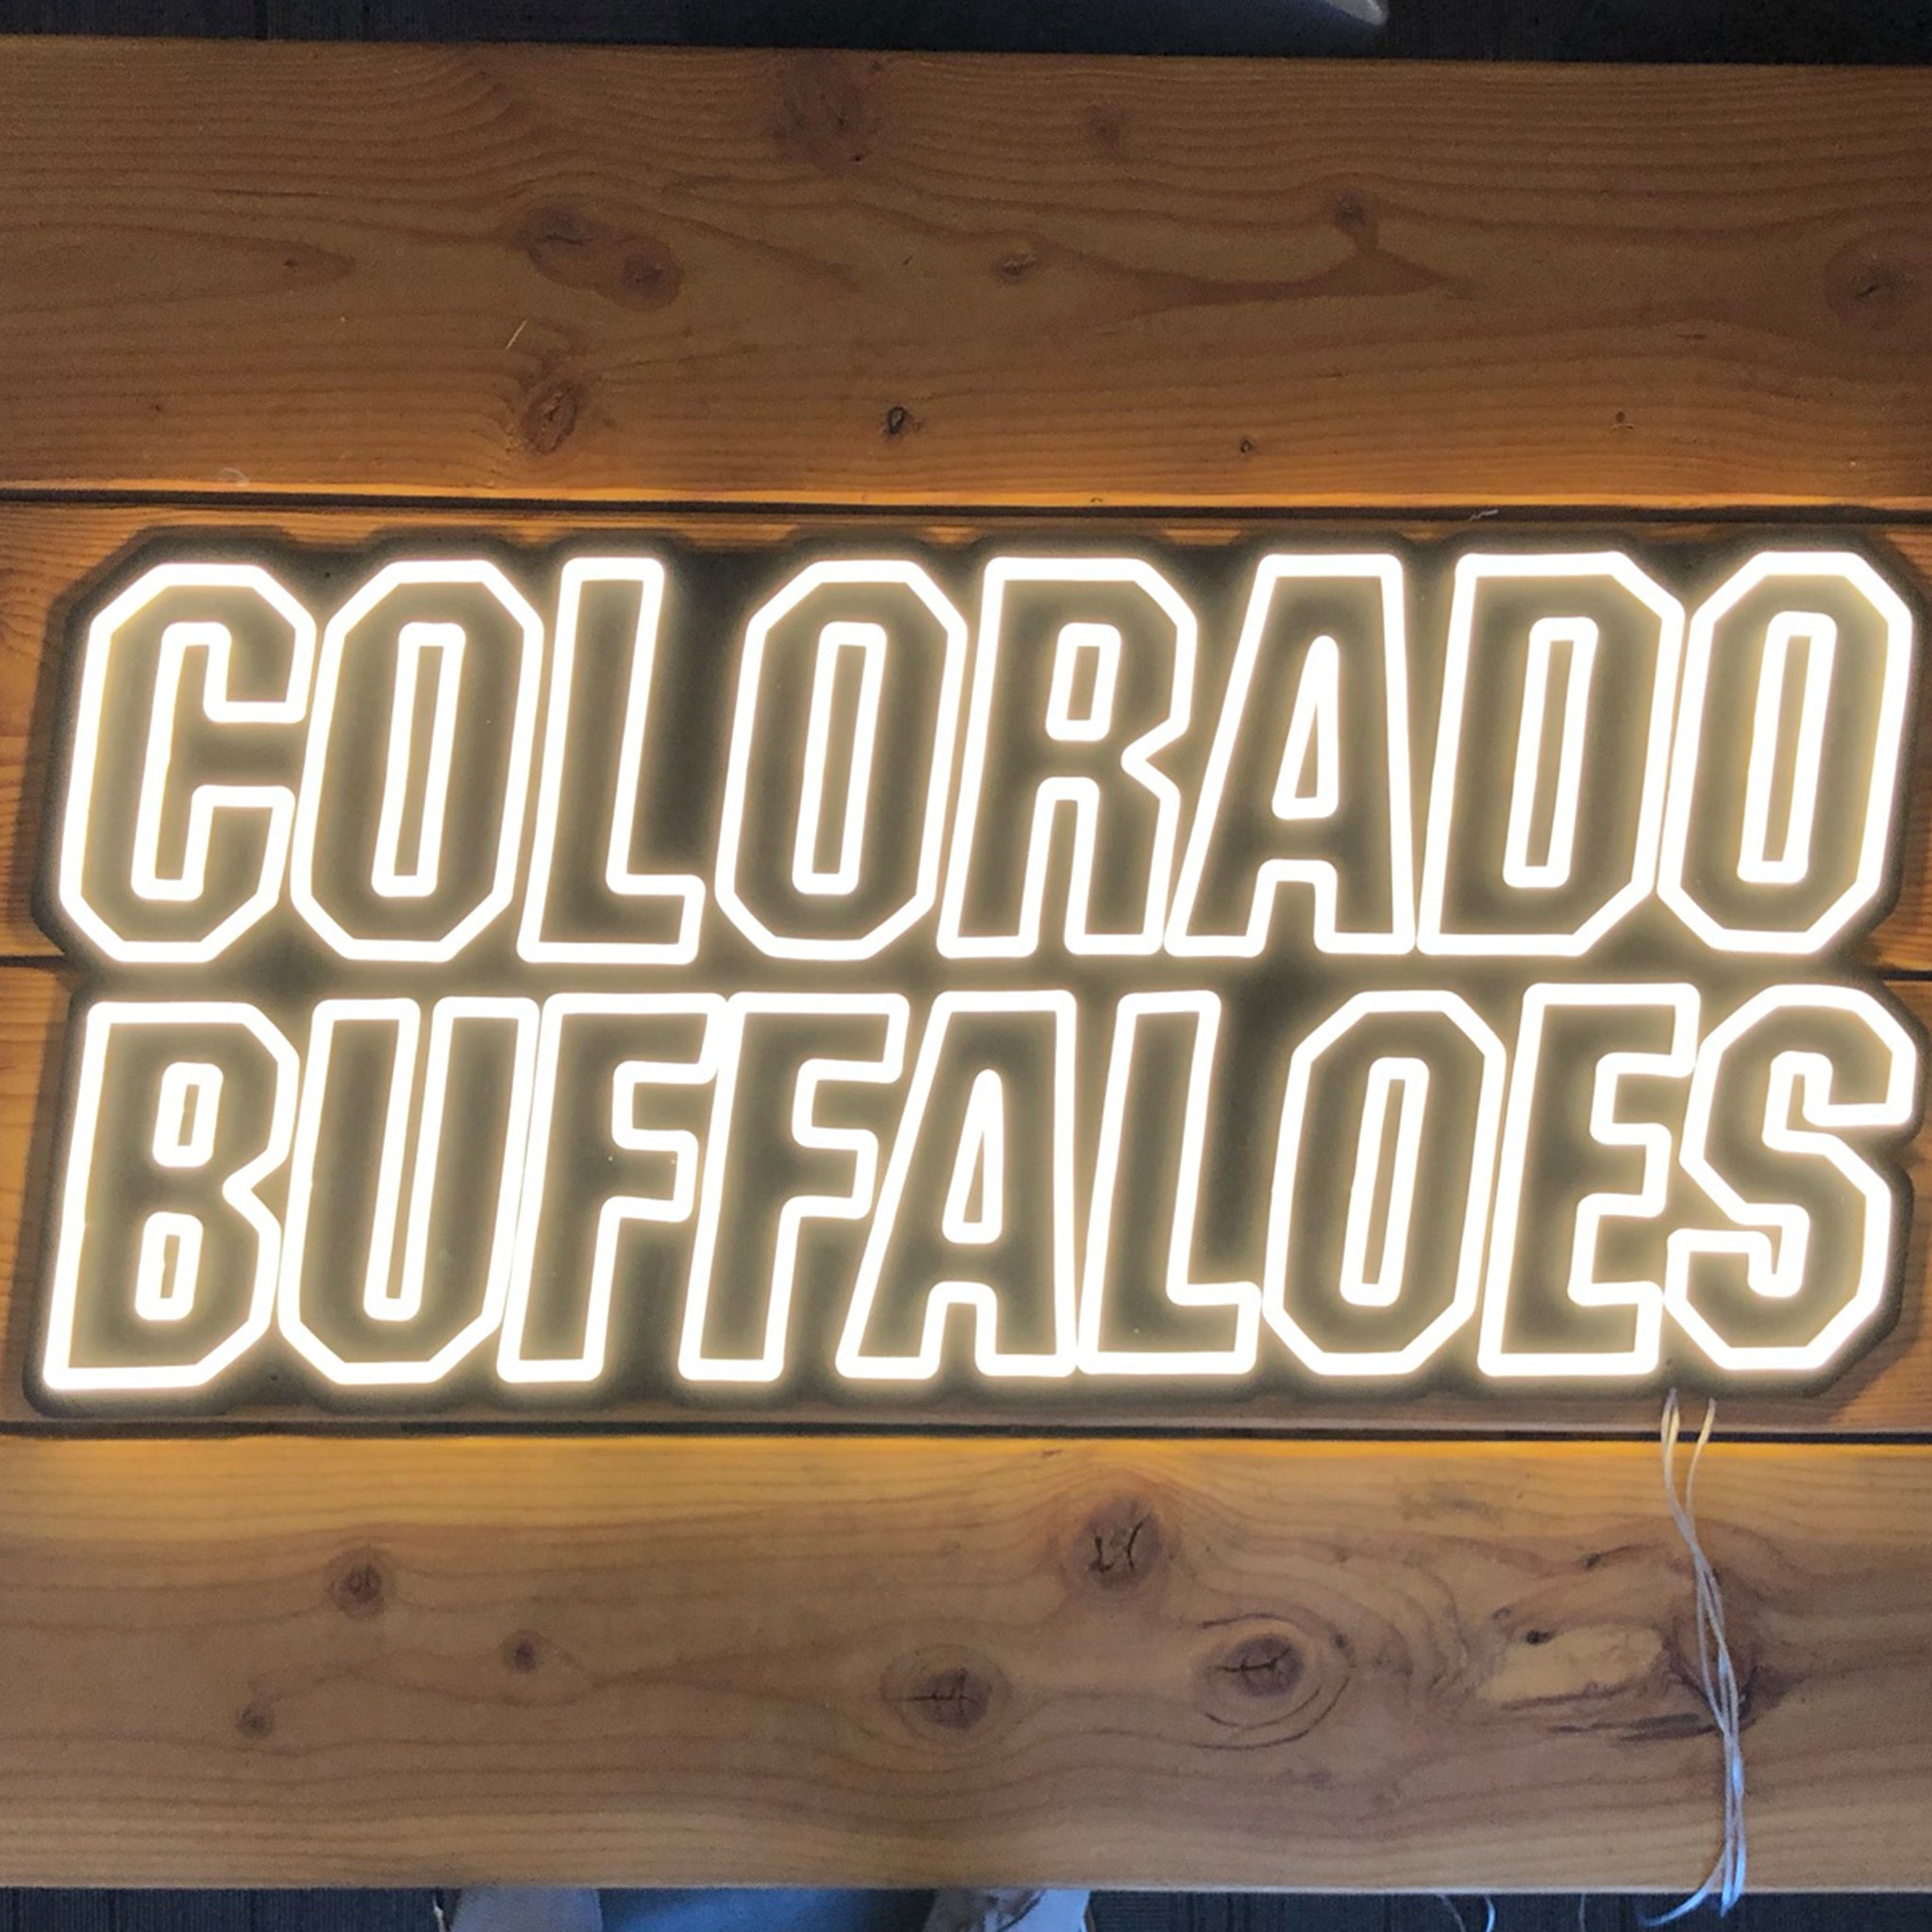 Colorado Buffaloes Neon Sign - Saturday Neon